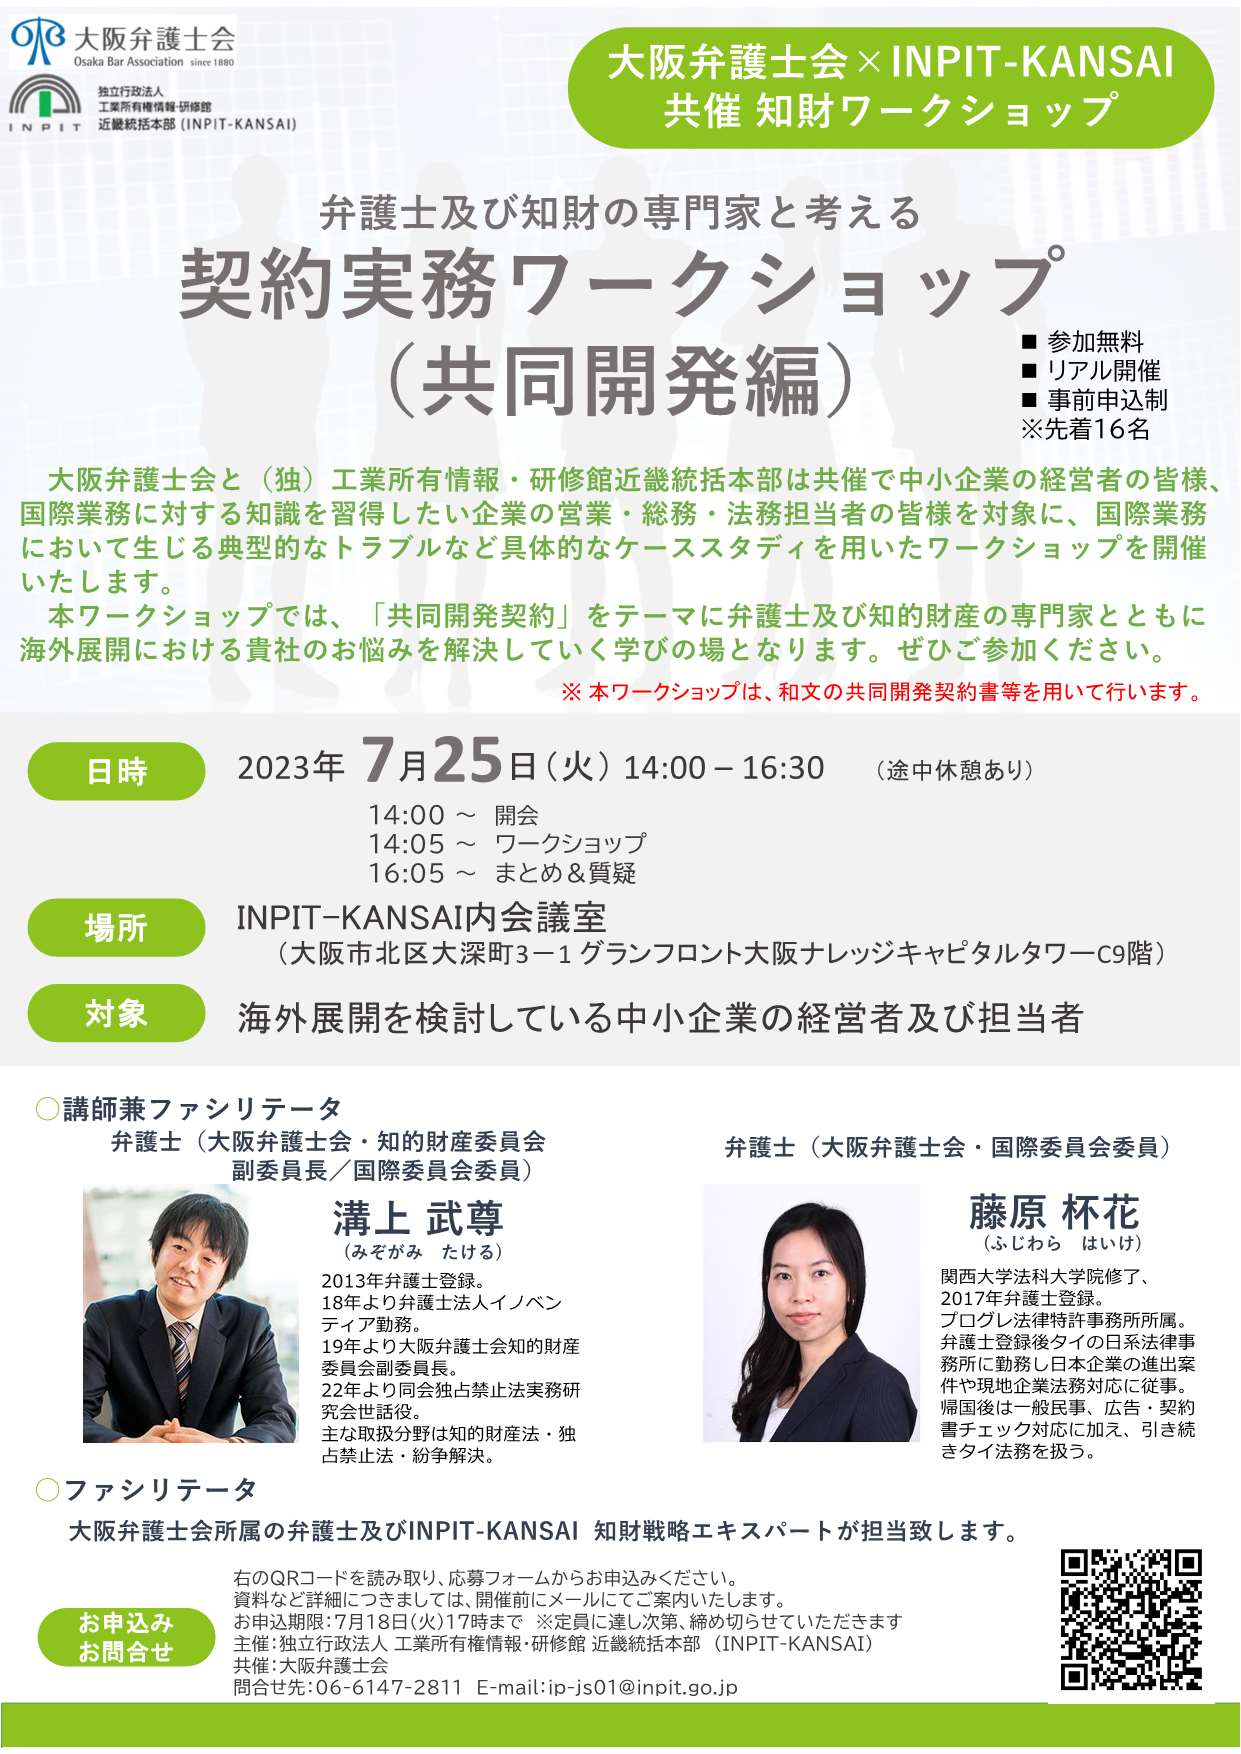 大阪弁護士会 ×INPIT-KANSAI 共催ワークショップチラシ